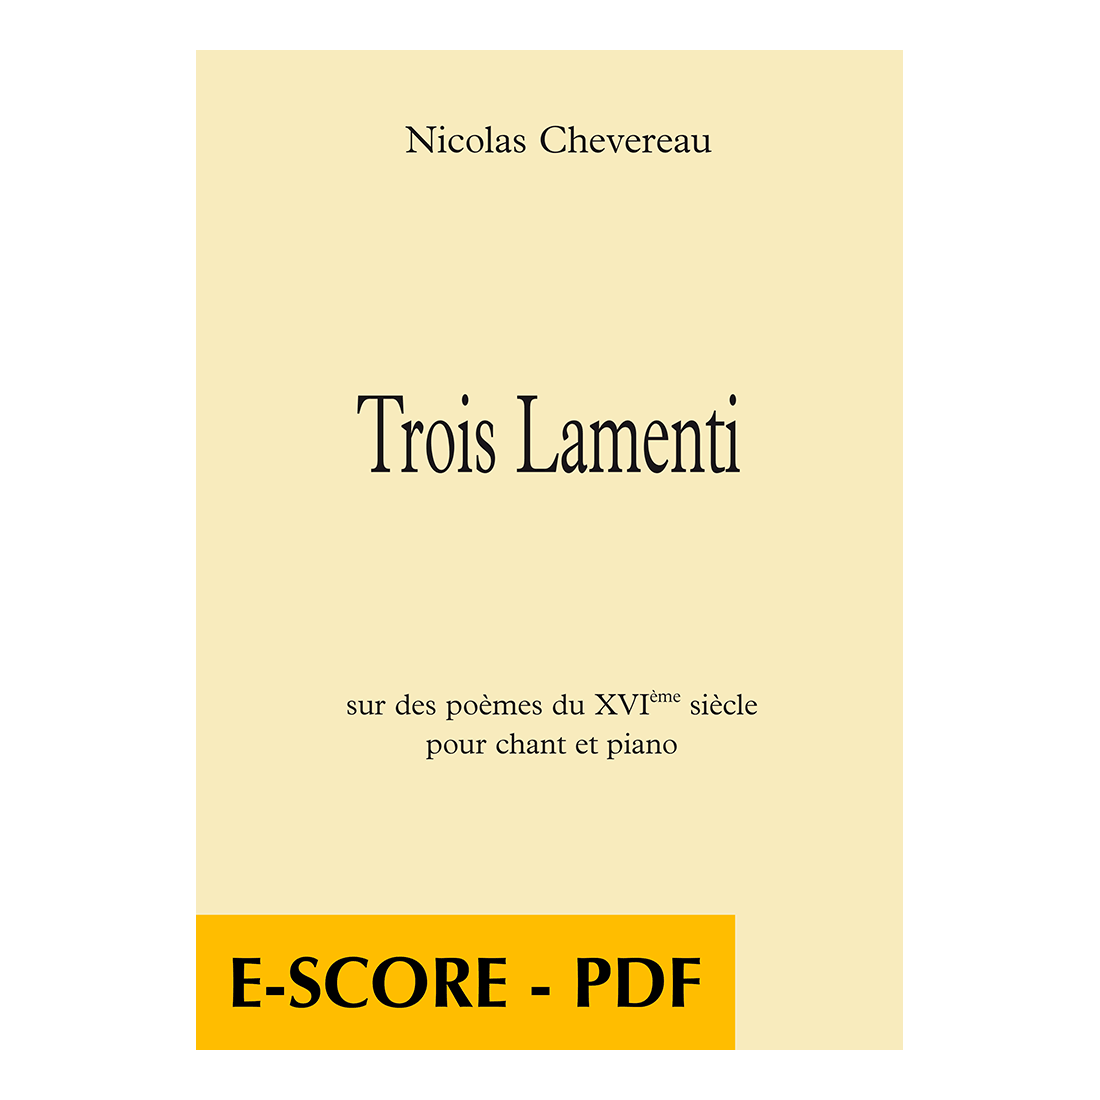 Trois lamenti sur des poèmes du XVIe siècle für Gesang und Klavier - E-score PDF